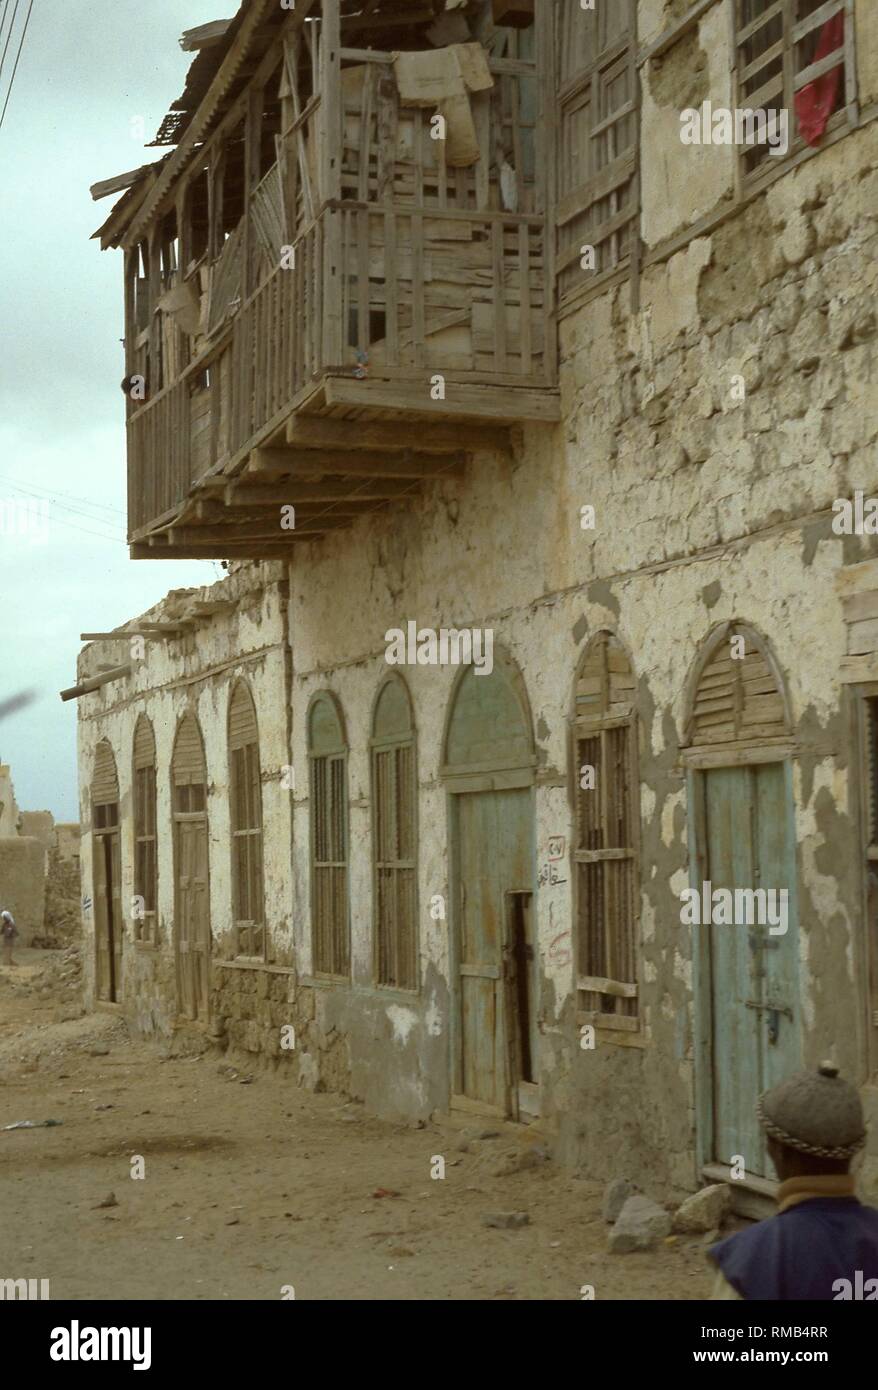 Fassaden von verlassenen und teilweise zerstörten Wohnhäuser in der sudanesischen Hafenstadt Suakin am Roten Meer. Anfang der 80er Jahre, erneute Spannungen zwischen der arabisch-islamischen Norden und dem afrikanischen Süden Christian-Black zusammen mit der fortschreitenden Islamisierung, führte zu einem erneuten Ausbruch des Bürgerkriegs im Sudan. Stockfoto